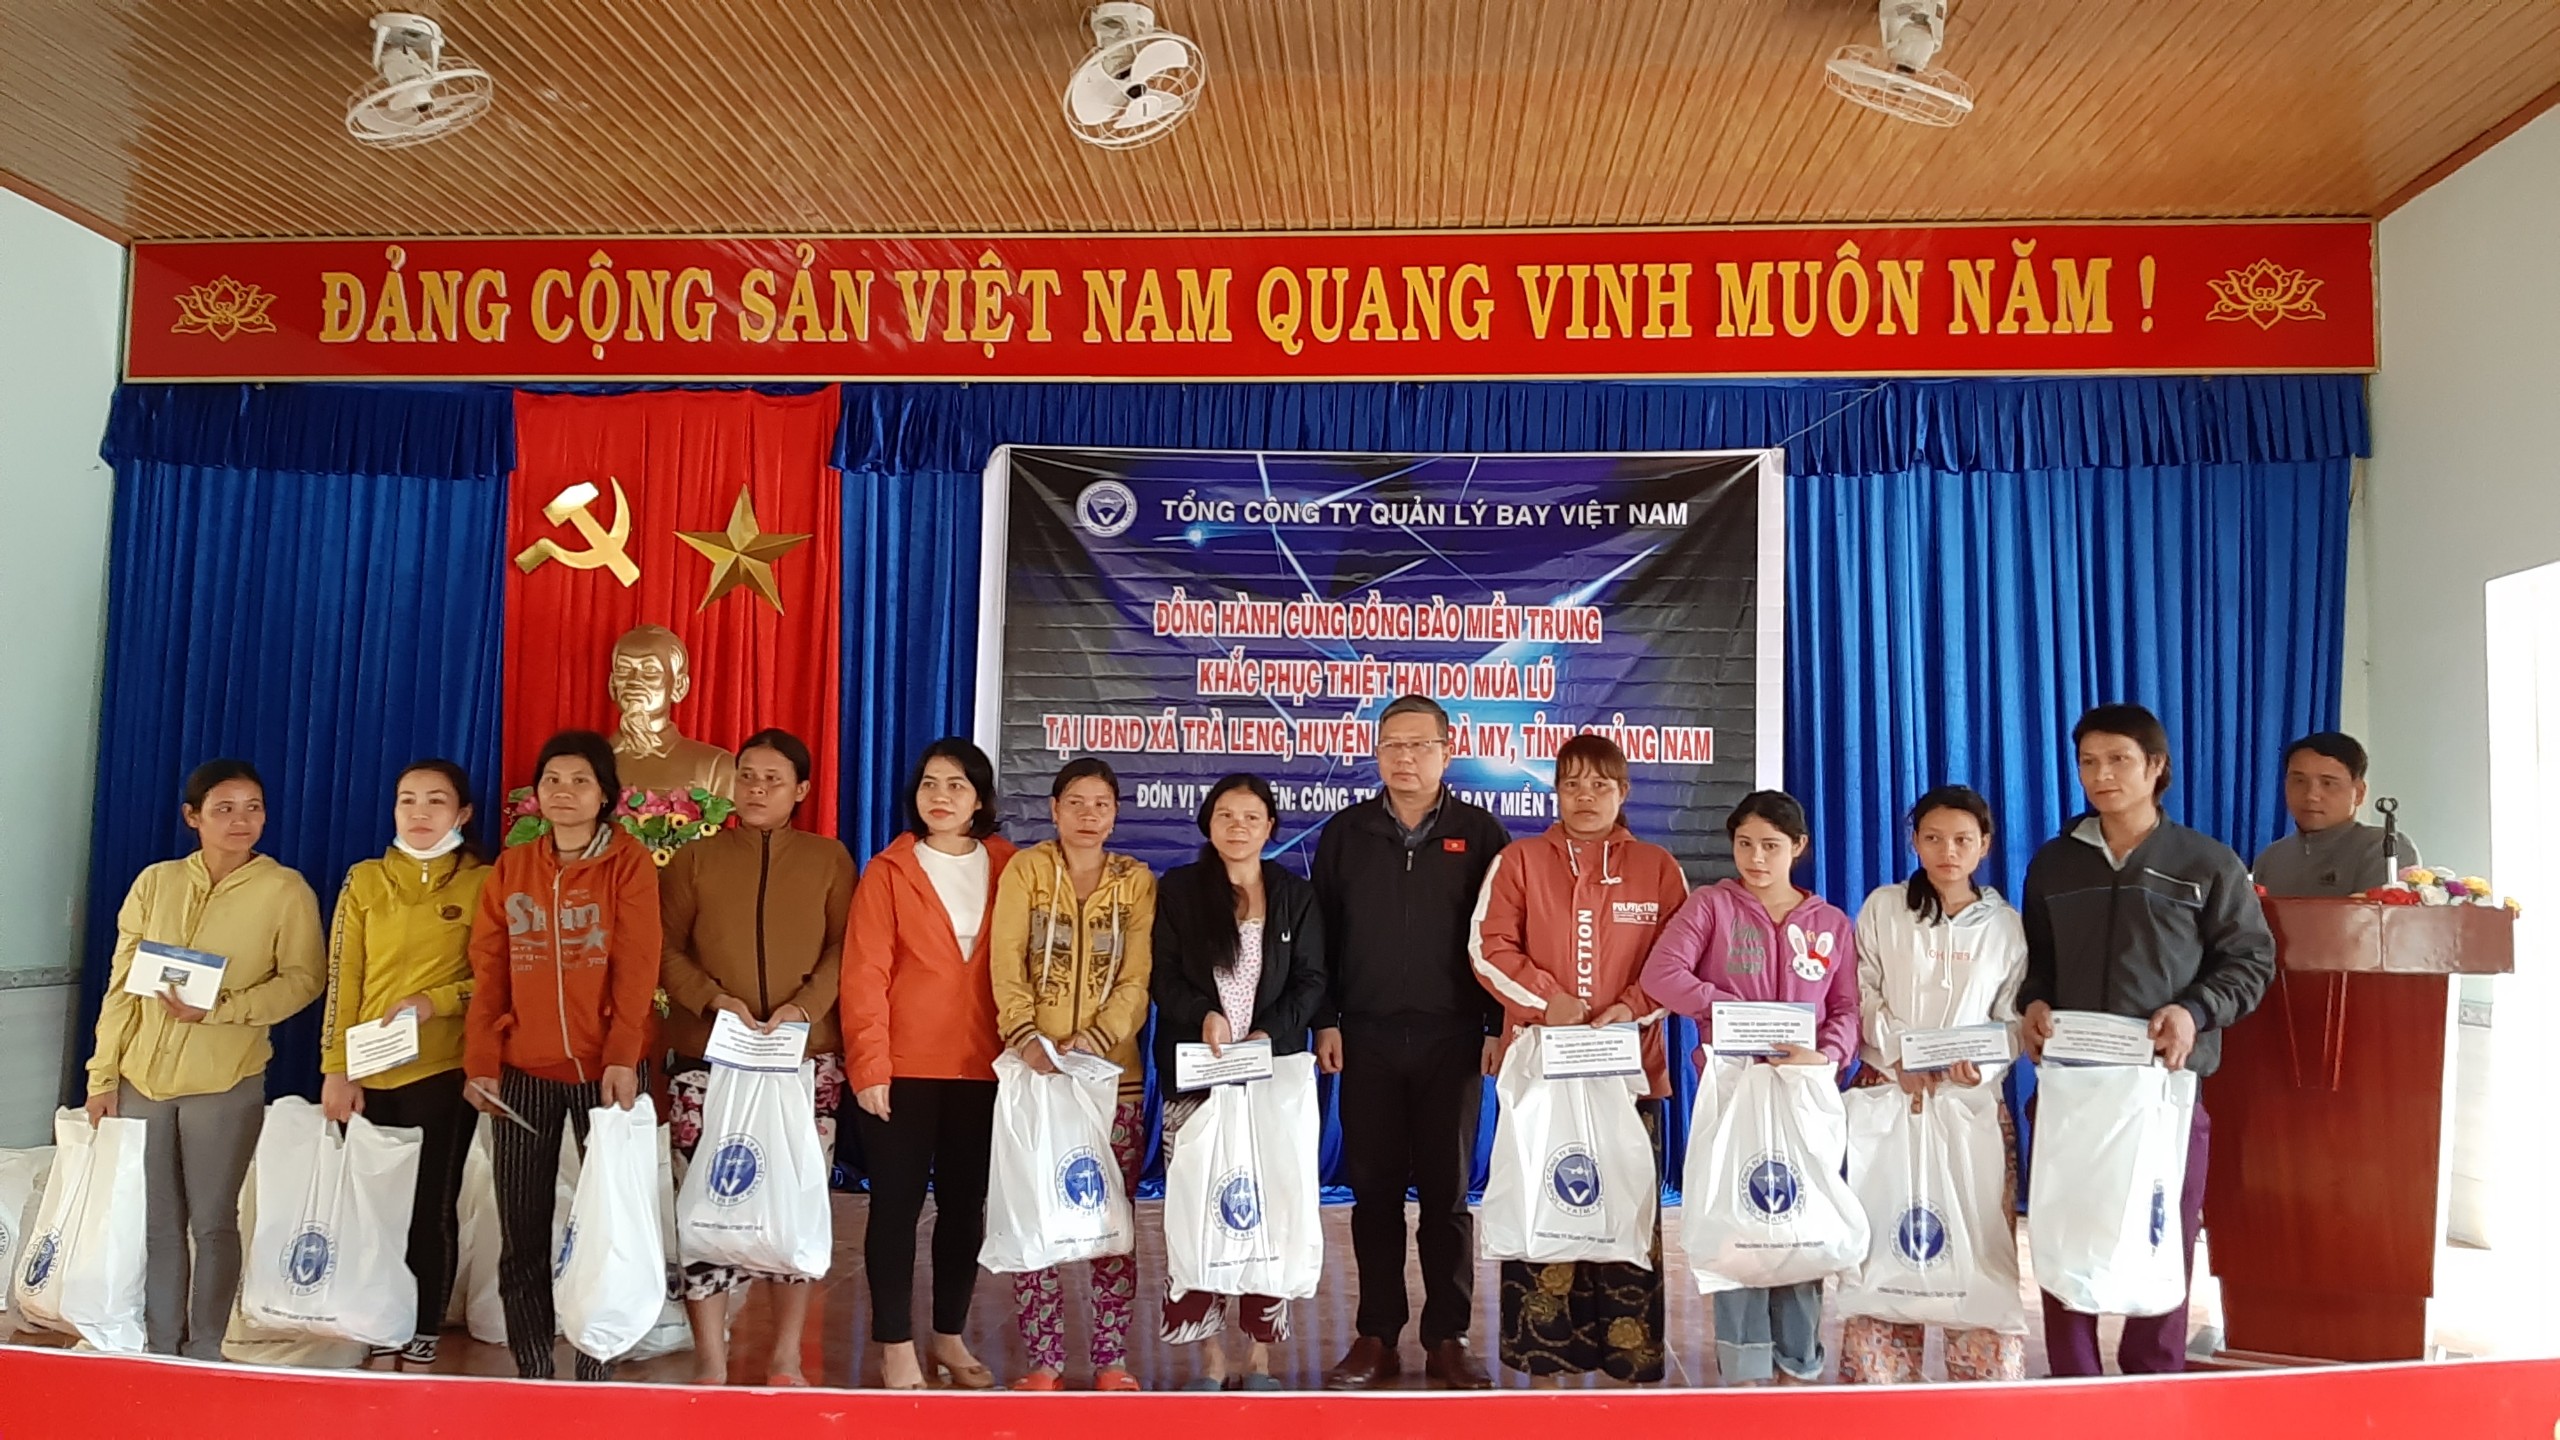 Công đoàn Công ty Quản lý bay miền Trung tổ chức từ thiện tại Quảng Nam